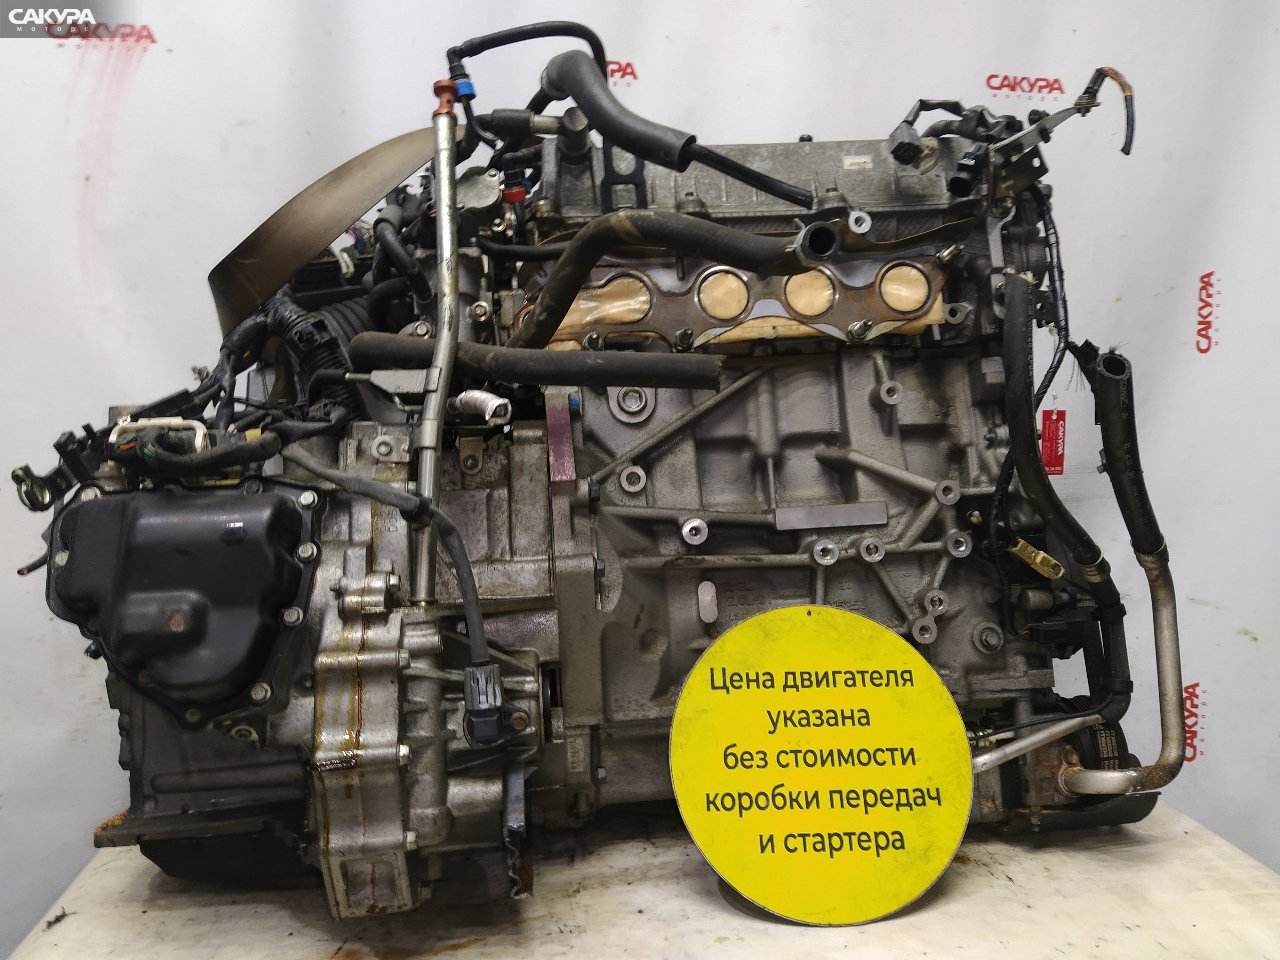 Двигатель Mazda Premacy CREW LF-VD: купить в Сакура Красноярск.